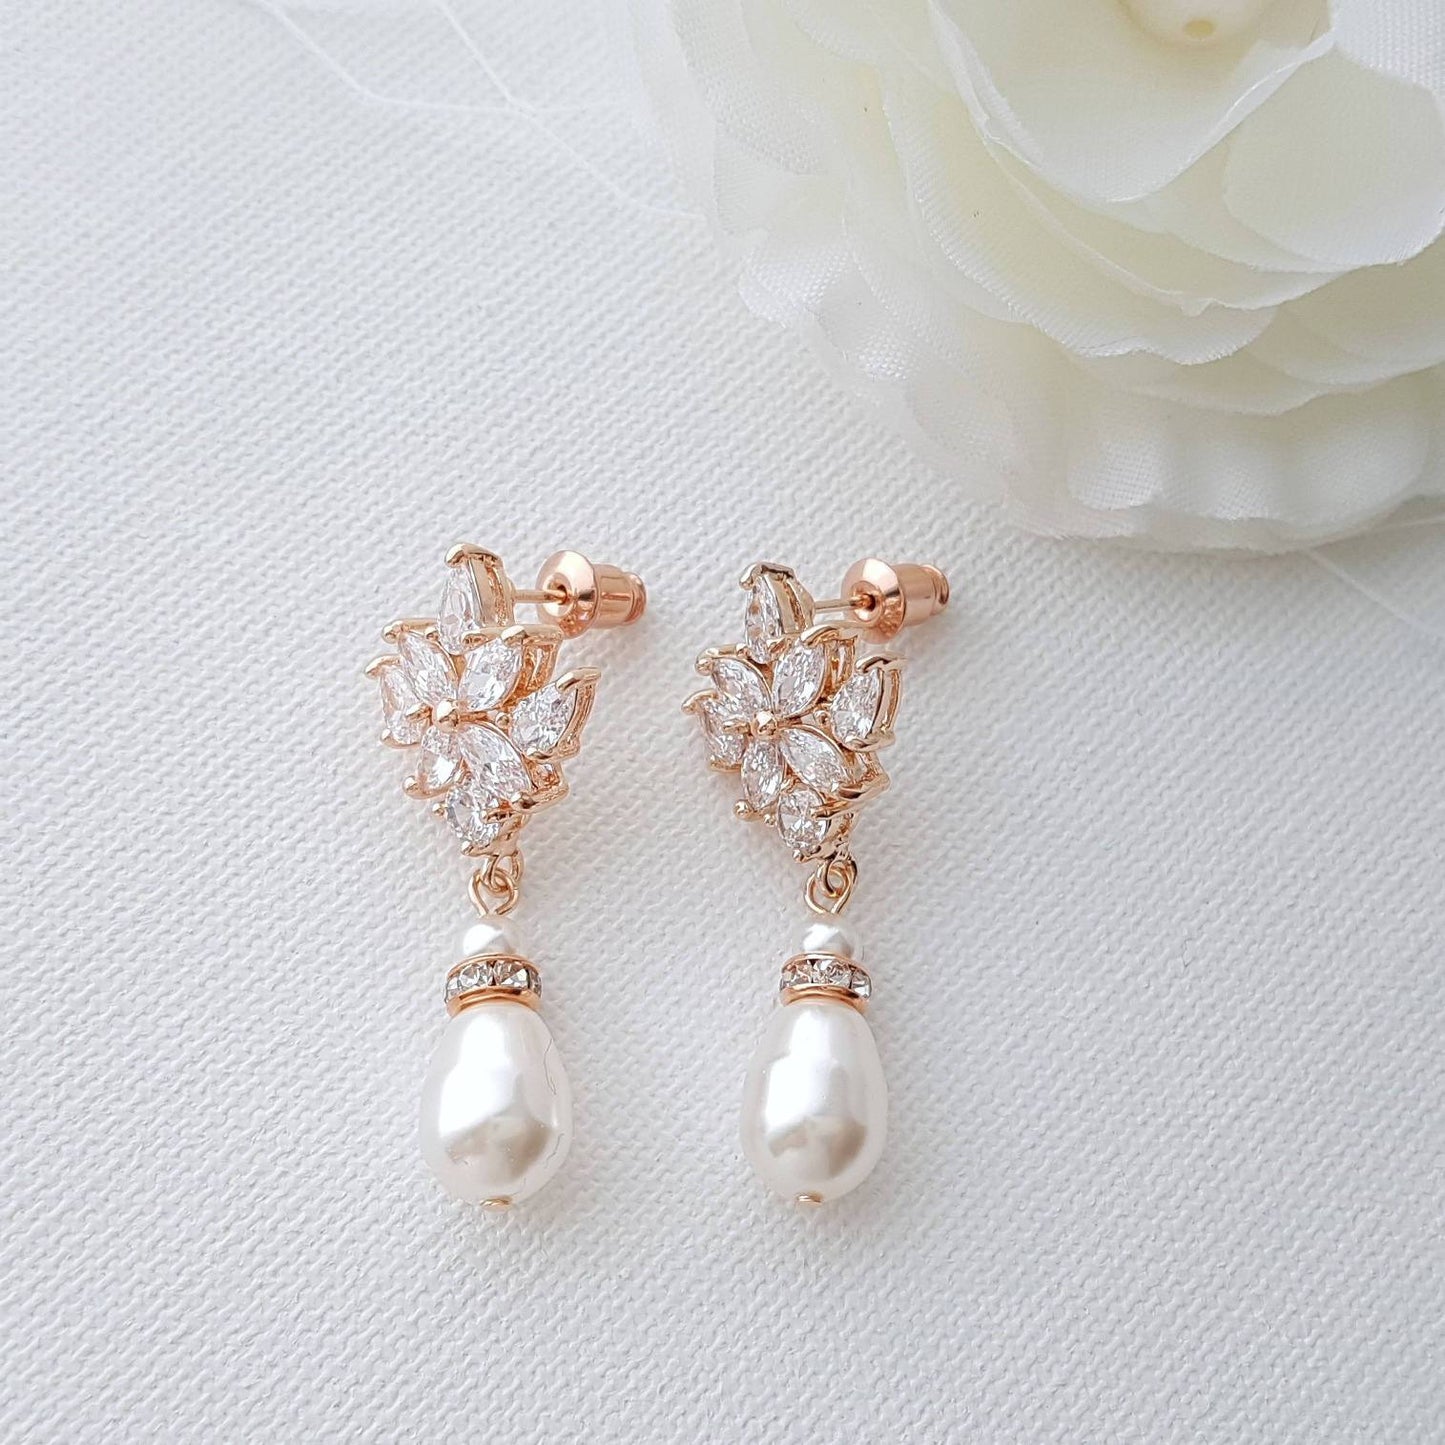 Rose Gold Bridal Earrings, Crystal Wedding Earrings, Bridesmaid, Swarovski Pearls Drop Earrings, Bridal Jewelry, Rose Gold Jewelry, Rosa - PoetryDesigns